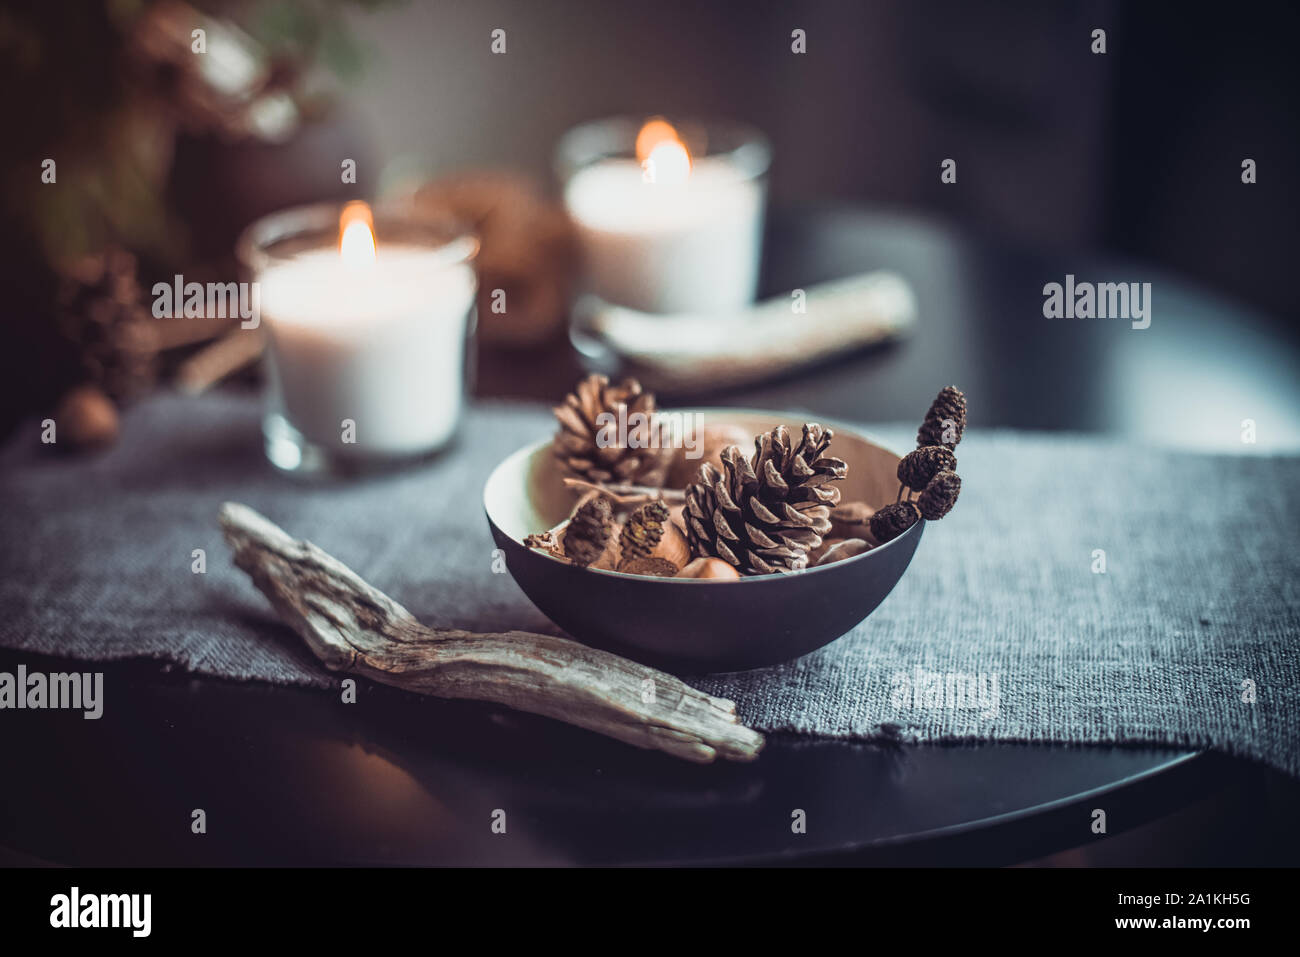 Brennende Kerzen und natürliche Einrichtung von Kegeln, Muttern in schwarz Schüssel auf den grauen Stoff Serviette auf den Schwarzen Tisch. Gemütliche Atmosphäre zu Hause. Kinfolk Hygge Sl Stockfoto